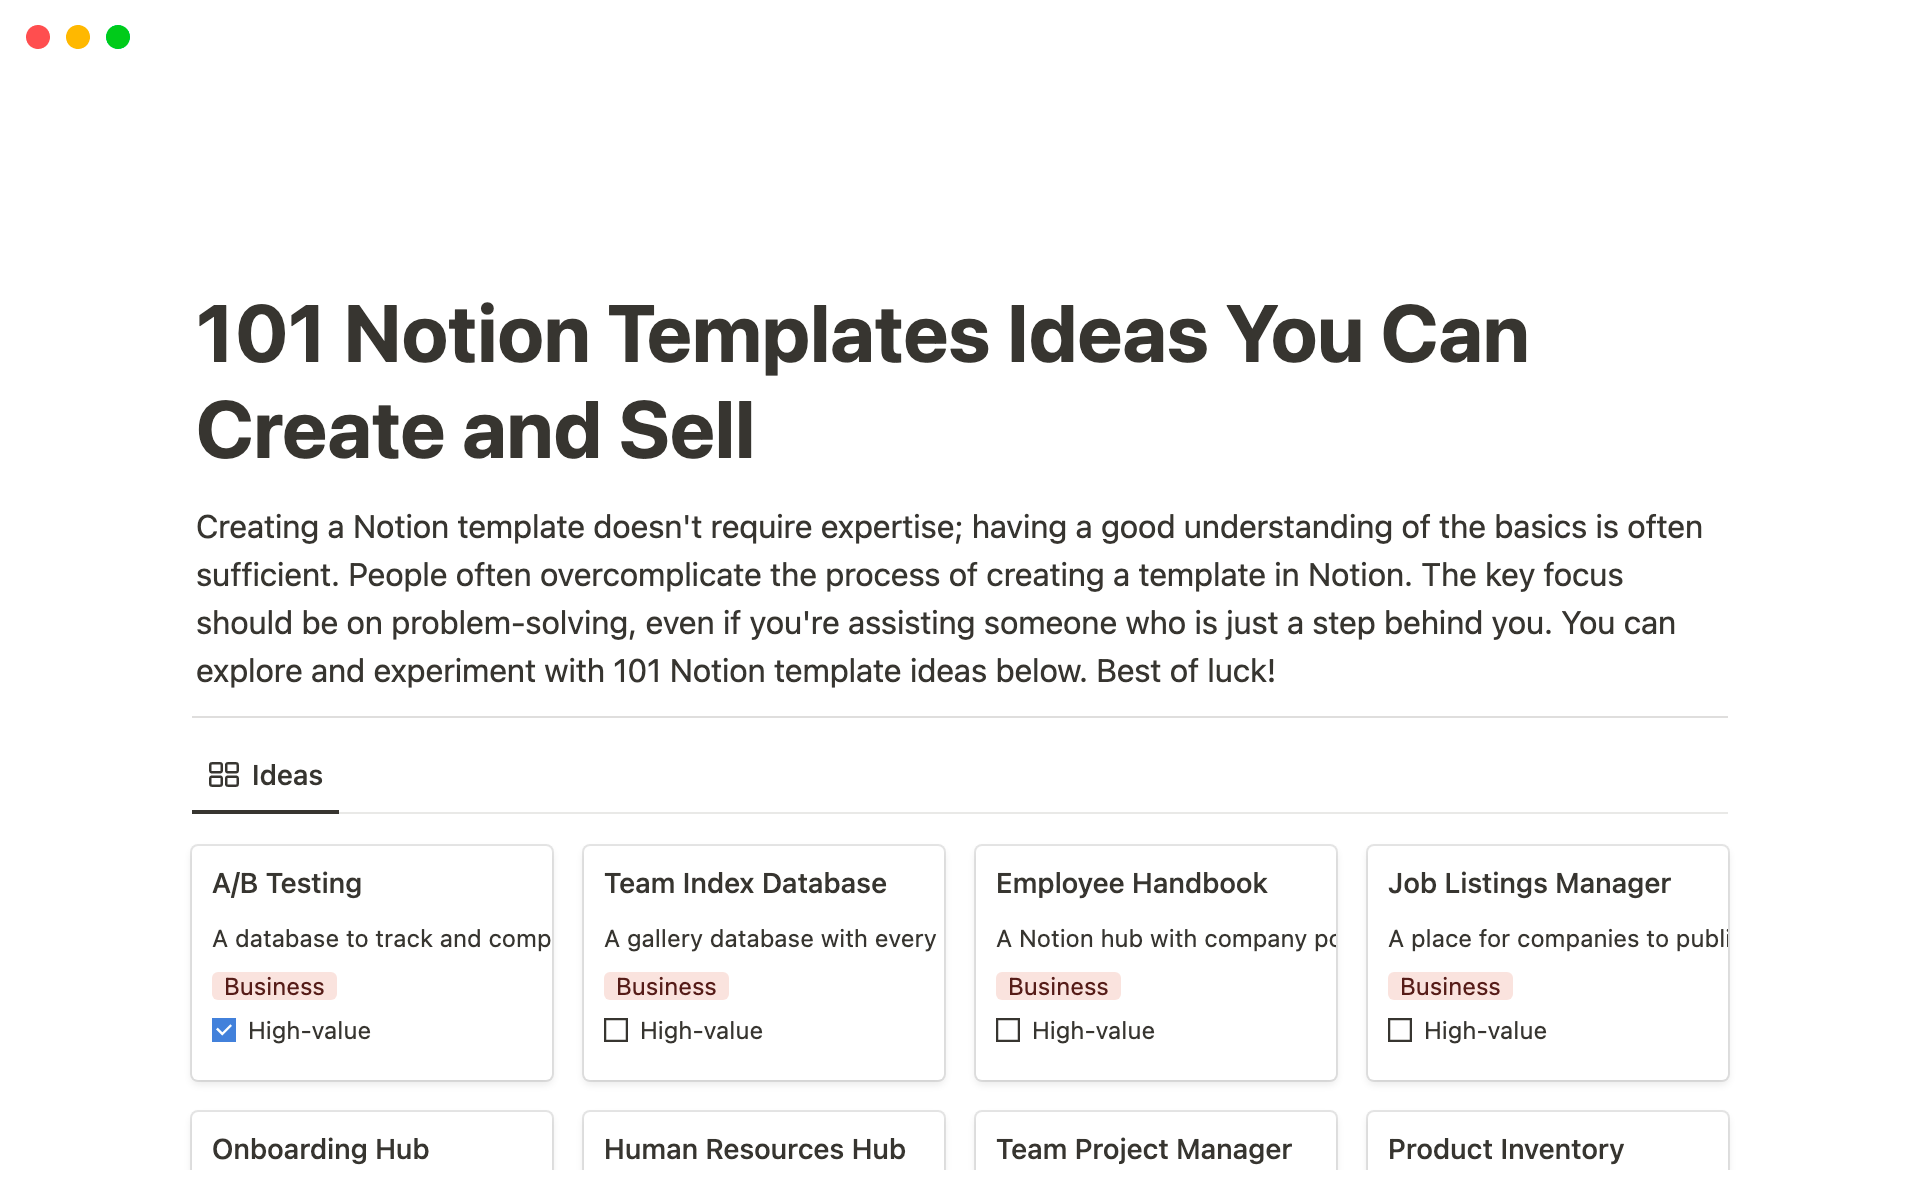 Uma prévia do modelo para 101 Notion Template Ideas You Can Create And Sell